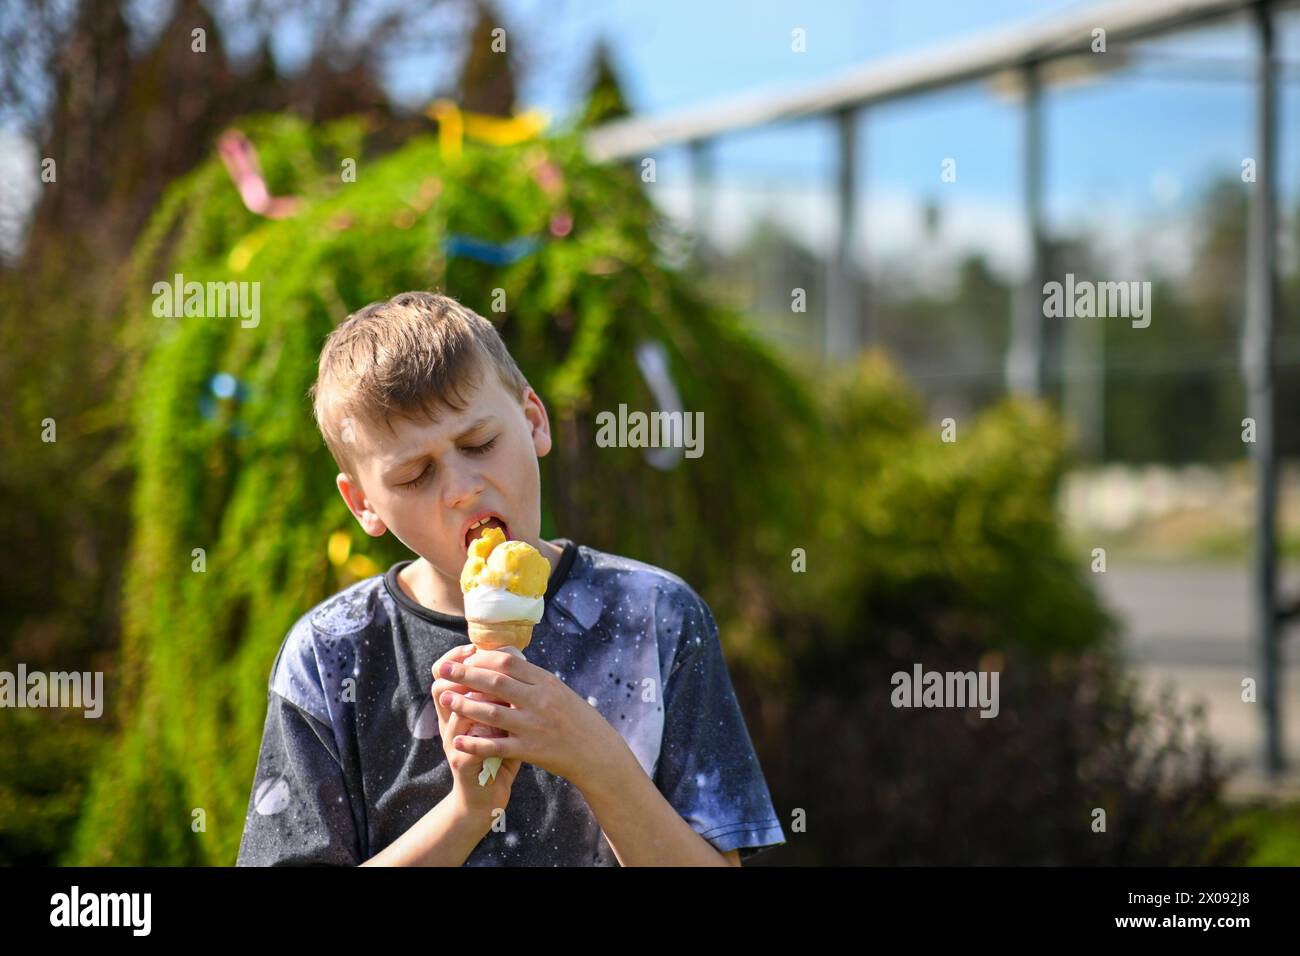 un garçon de 10 ans lèche de la crème glacée, fond flou d'un arbre. Banque D'Images